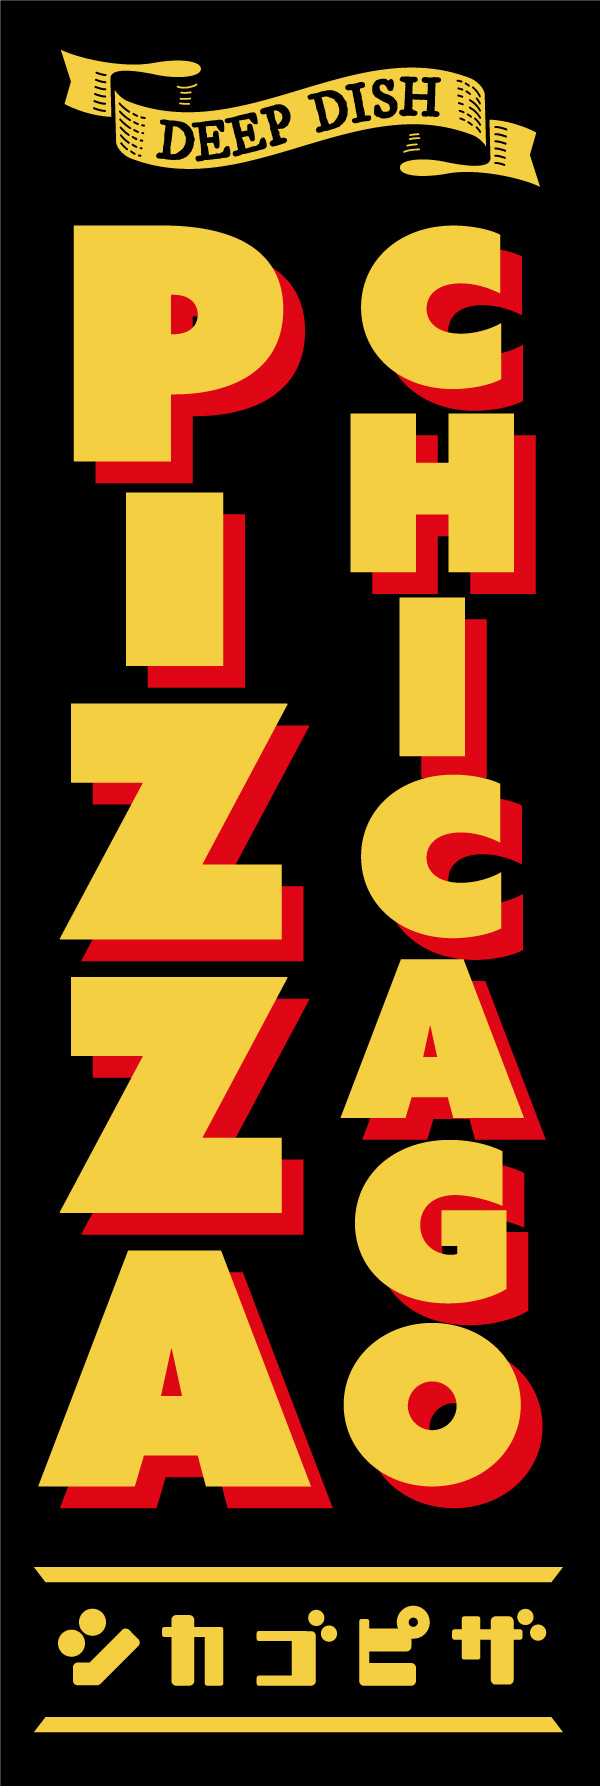 シカゴピザ 154_01「CHICAGO PIZZA（シカゴピザ）」ののぼりです。別名「ディープディッシュピザ」なので「DEEP DISH」のリボンを入れたデザインにしました。（Y.M） 